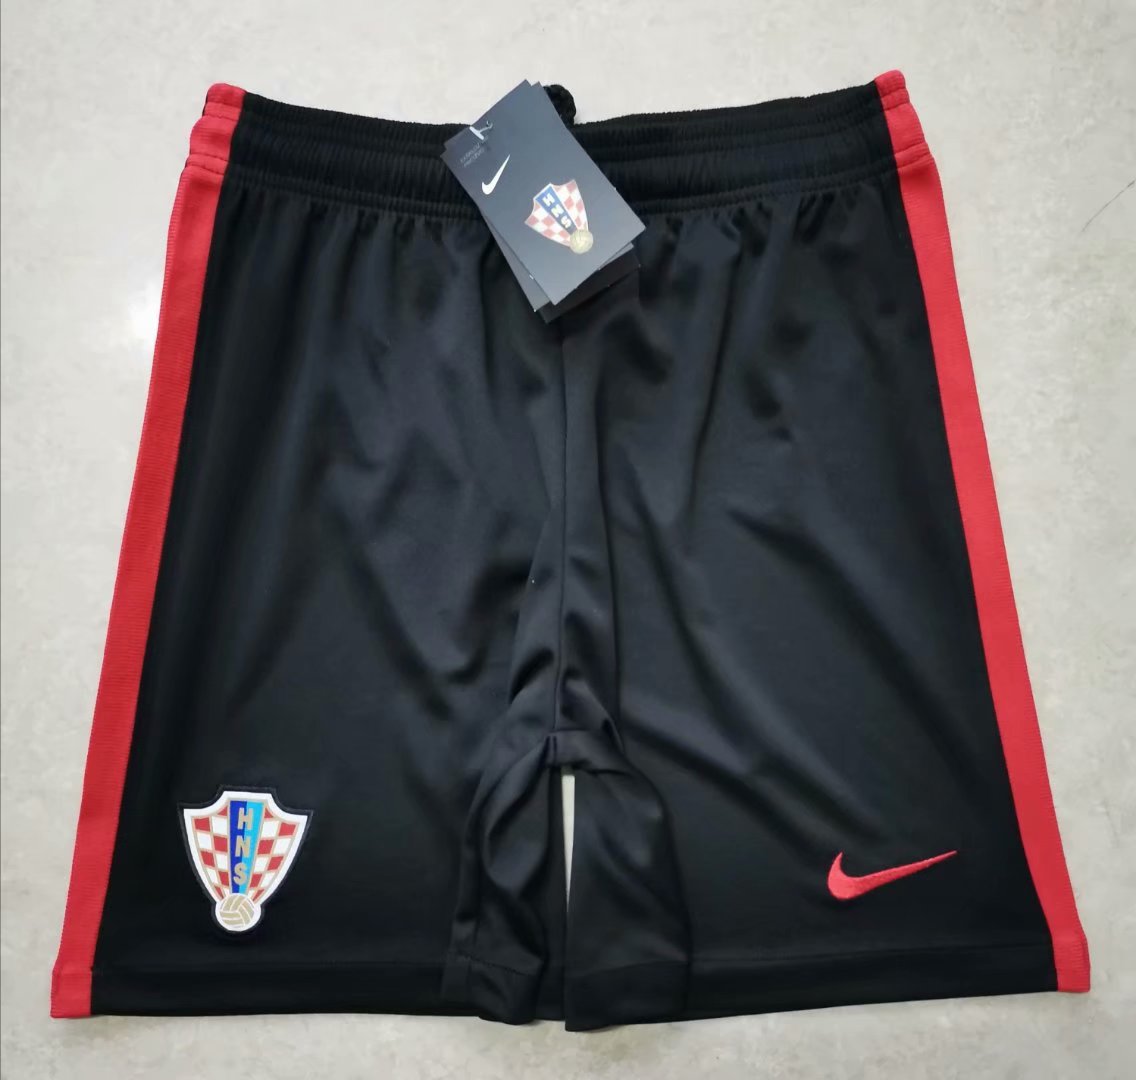 Croatian away shorts 2020-2021